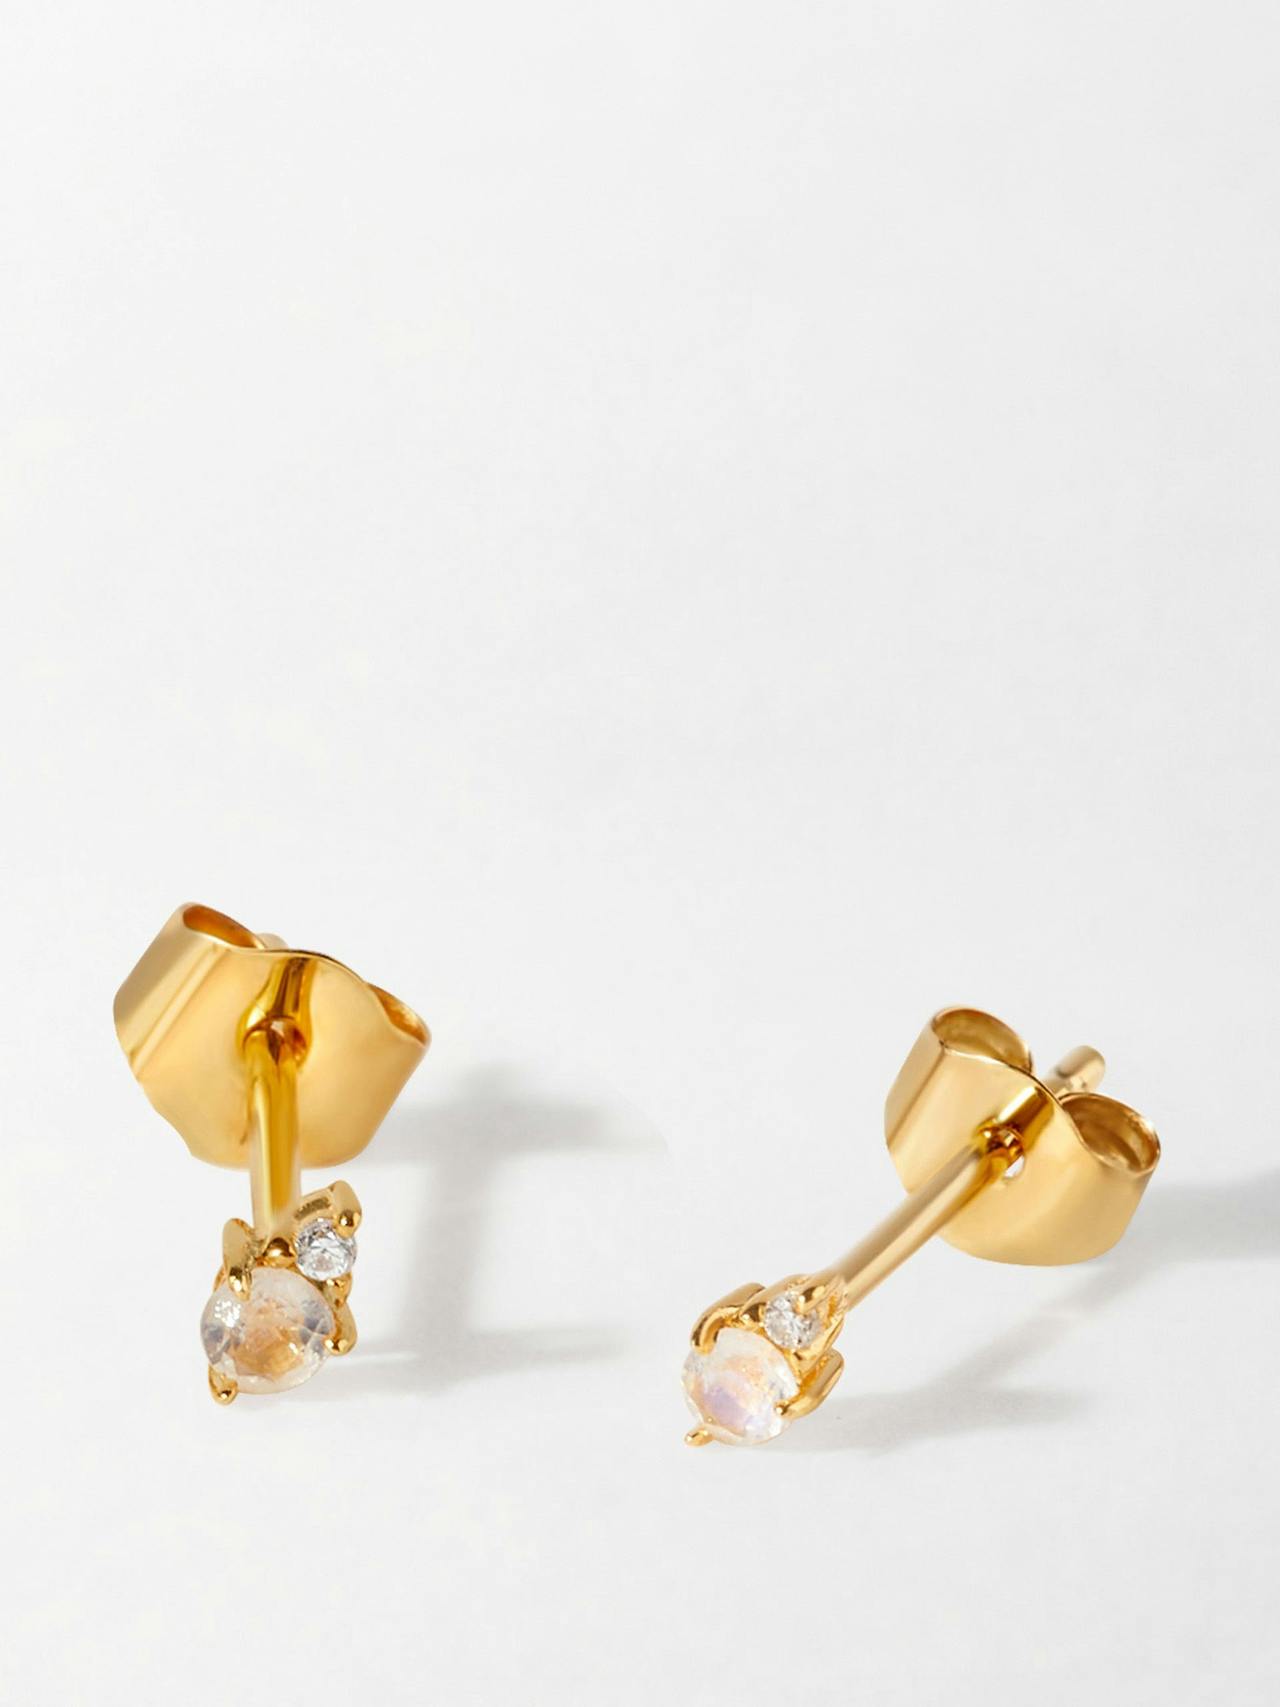 Moonstone diamond stud earrings